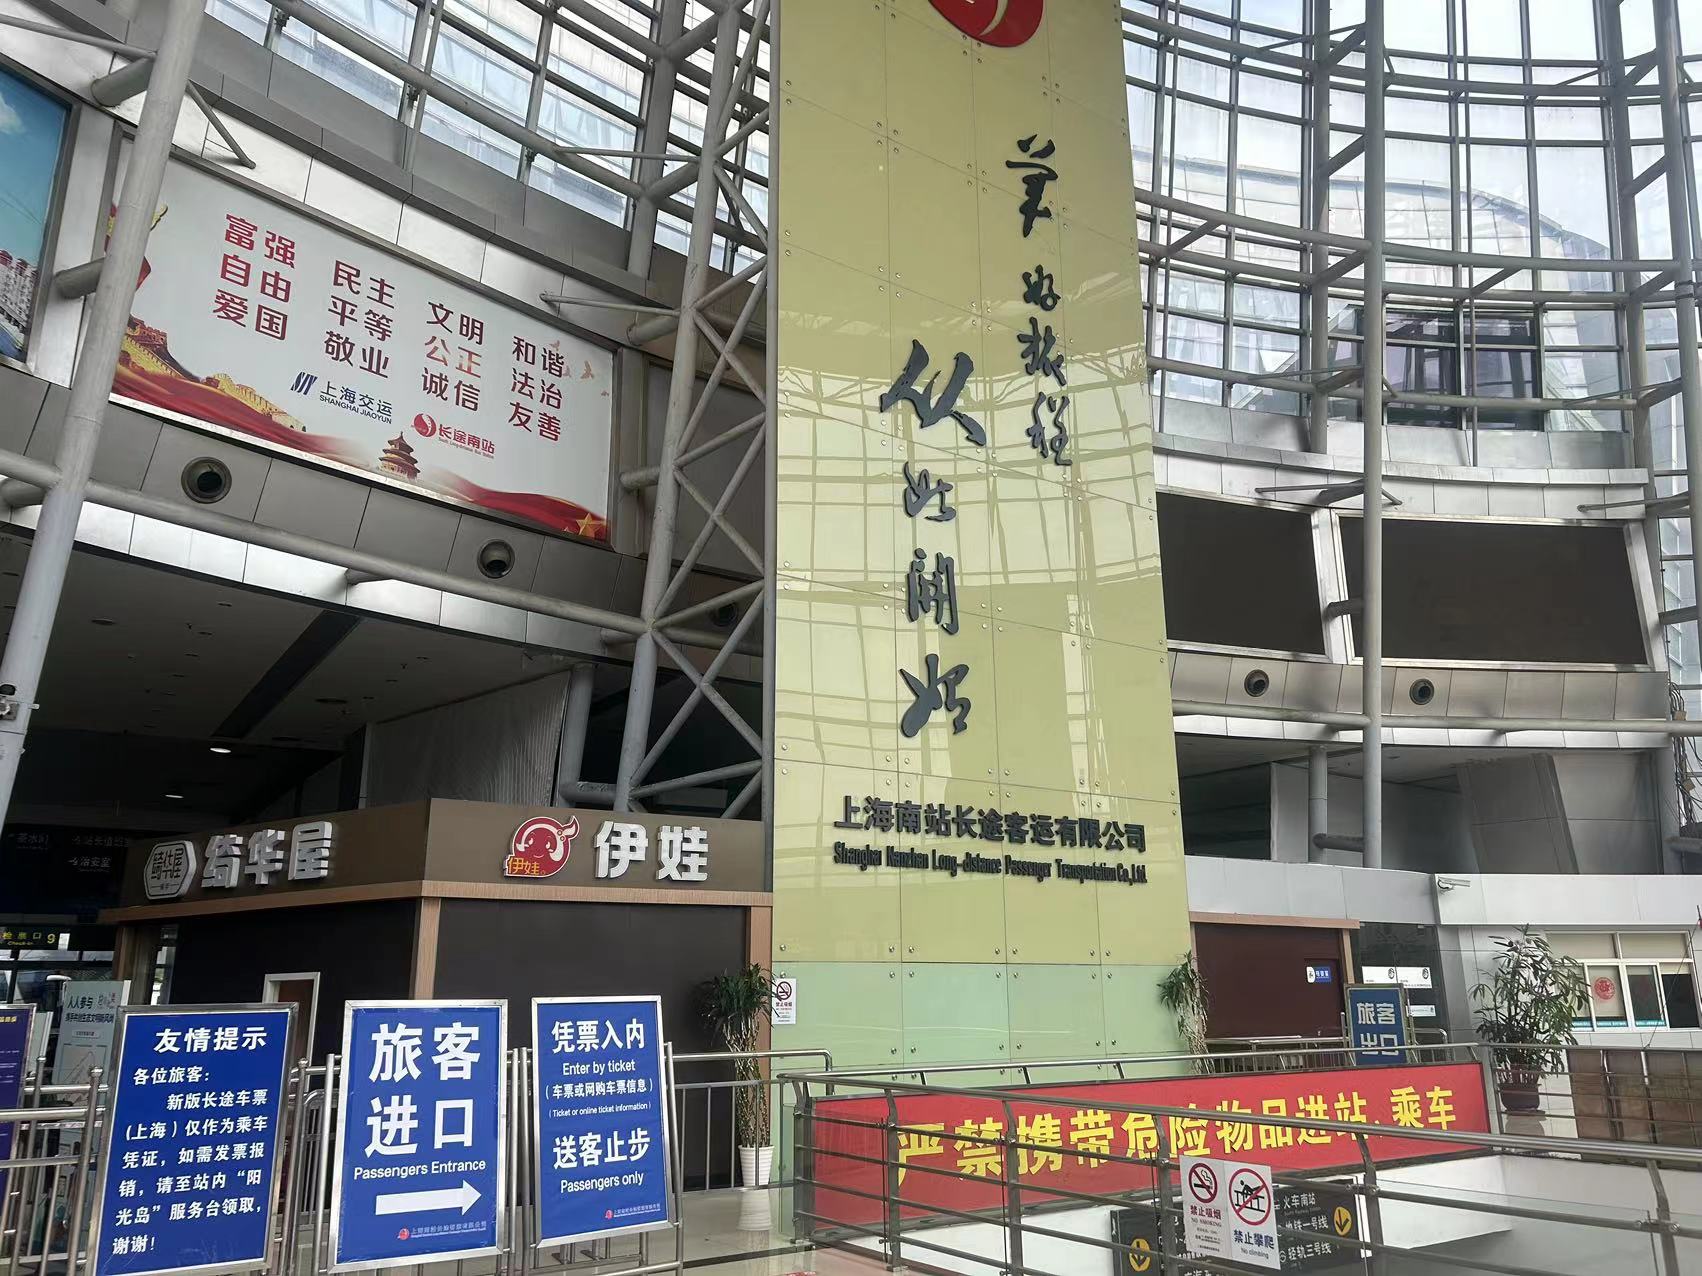 影像丨济南长途汽车总站三十年变迁